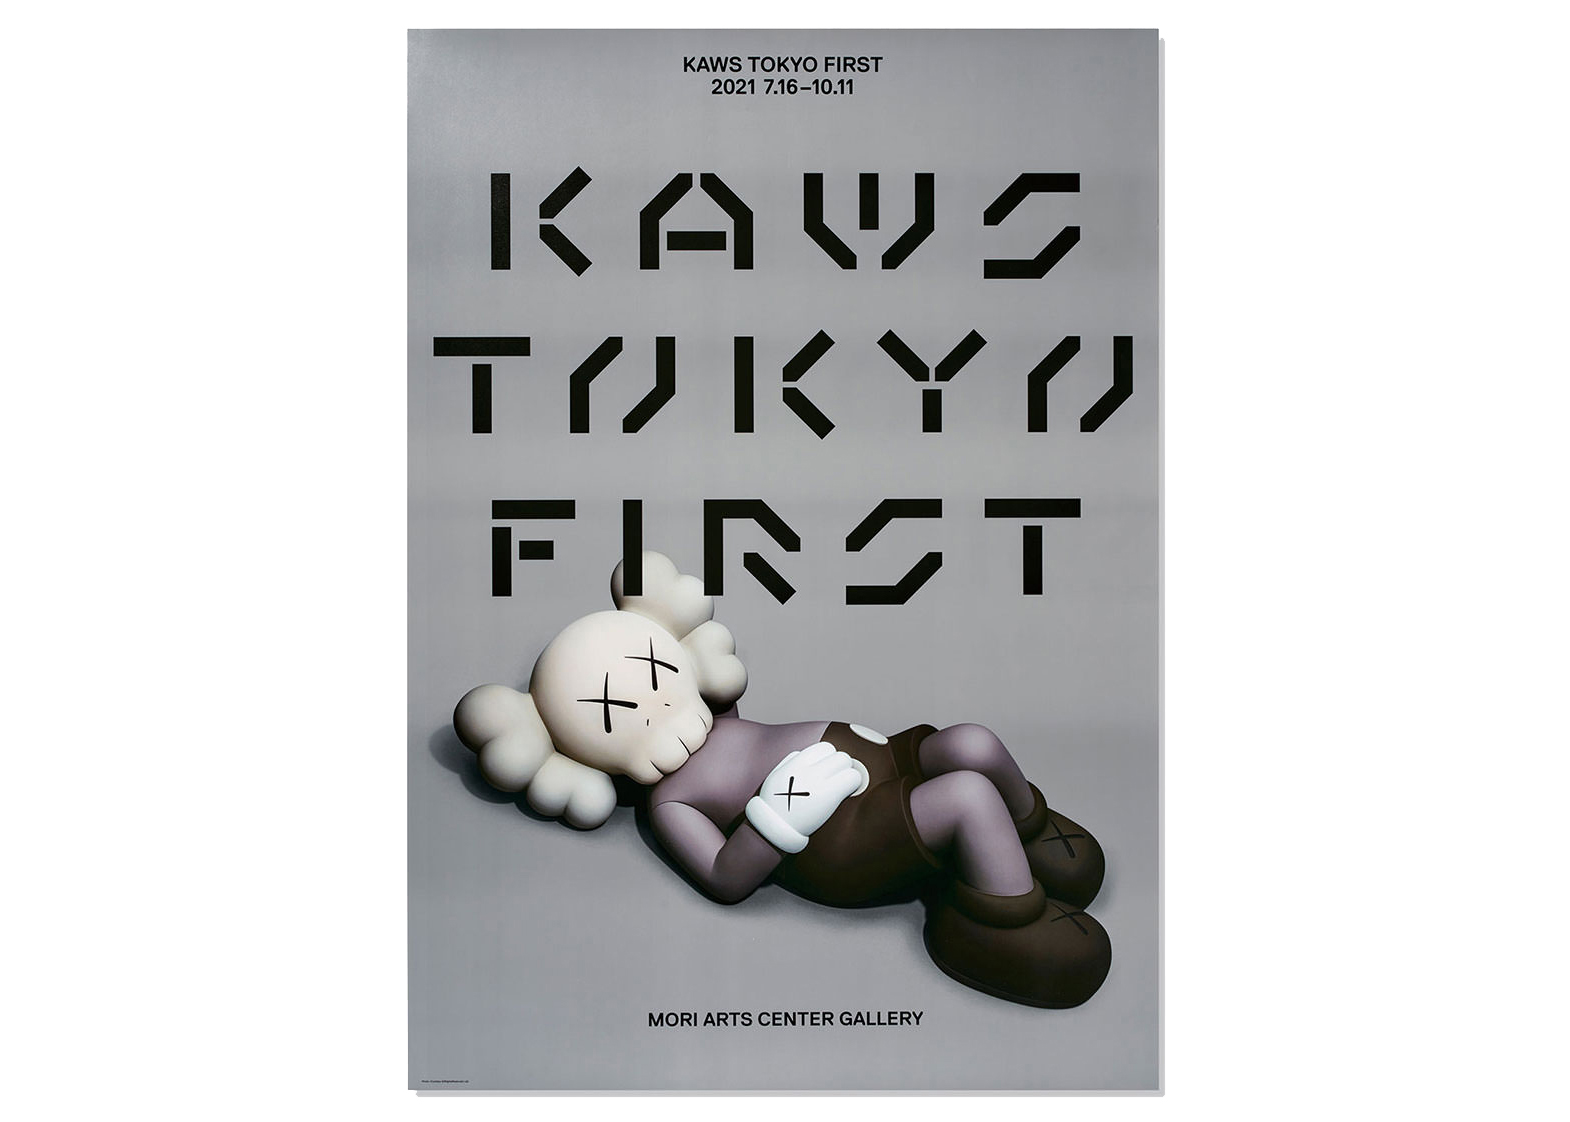 KAWS Tokyo First Holiday Companion Poster - US